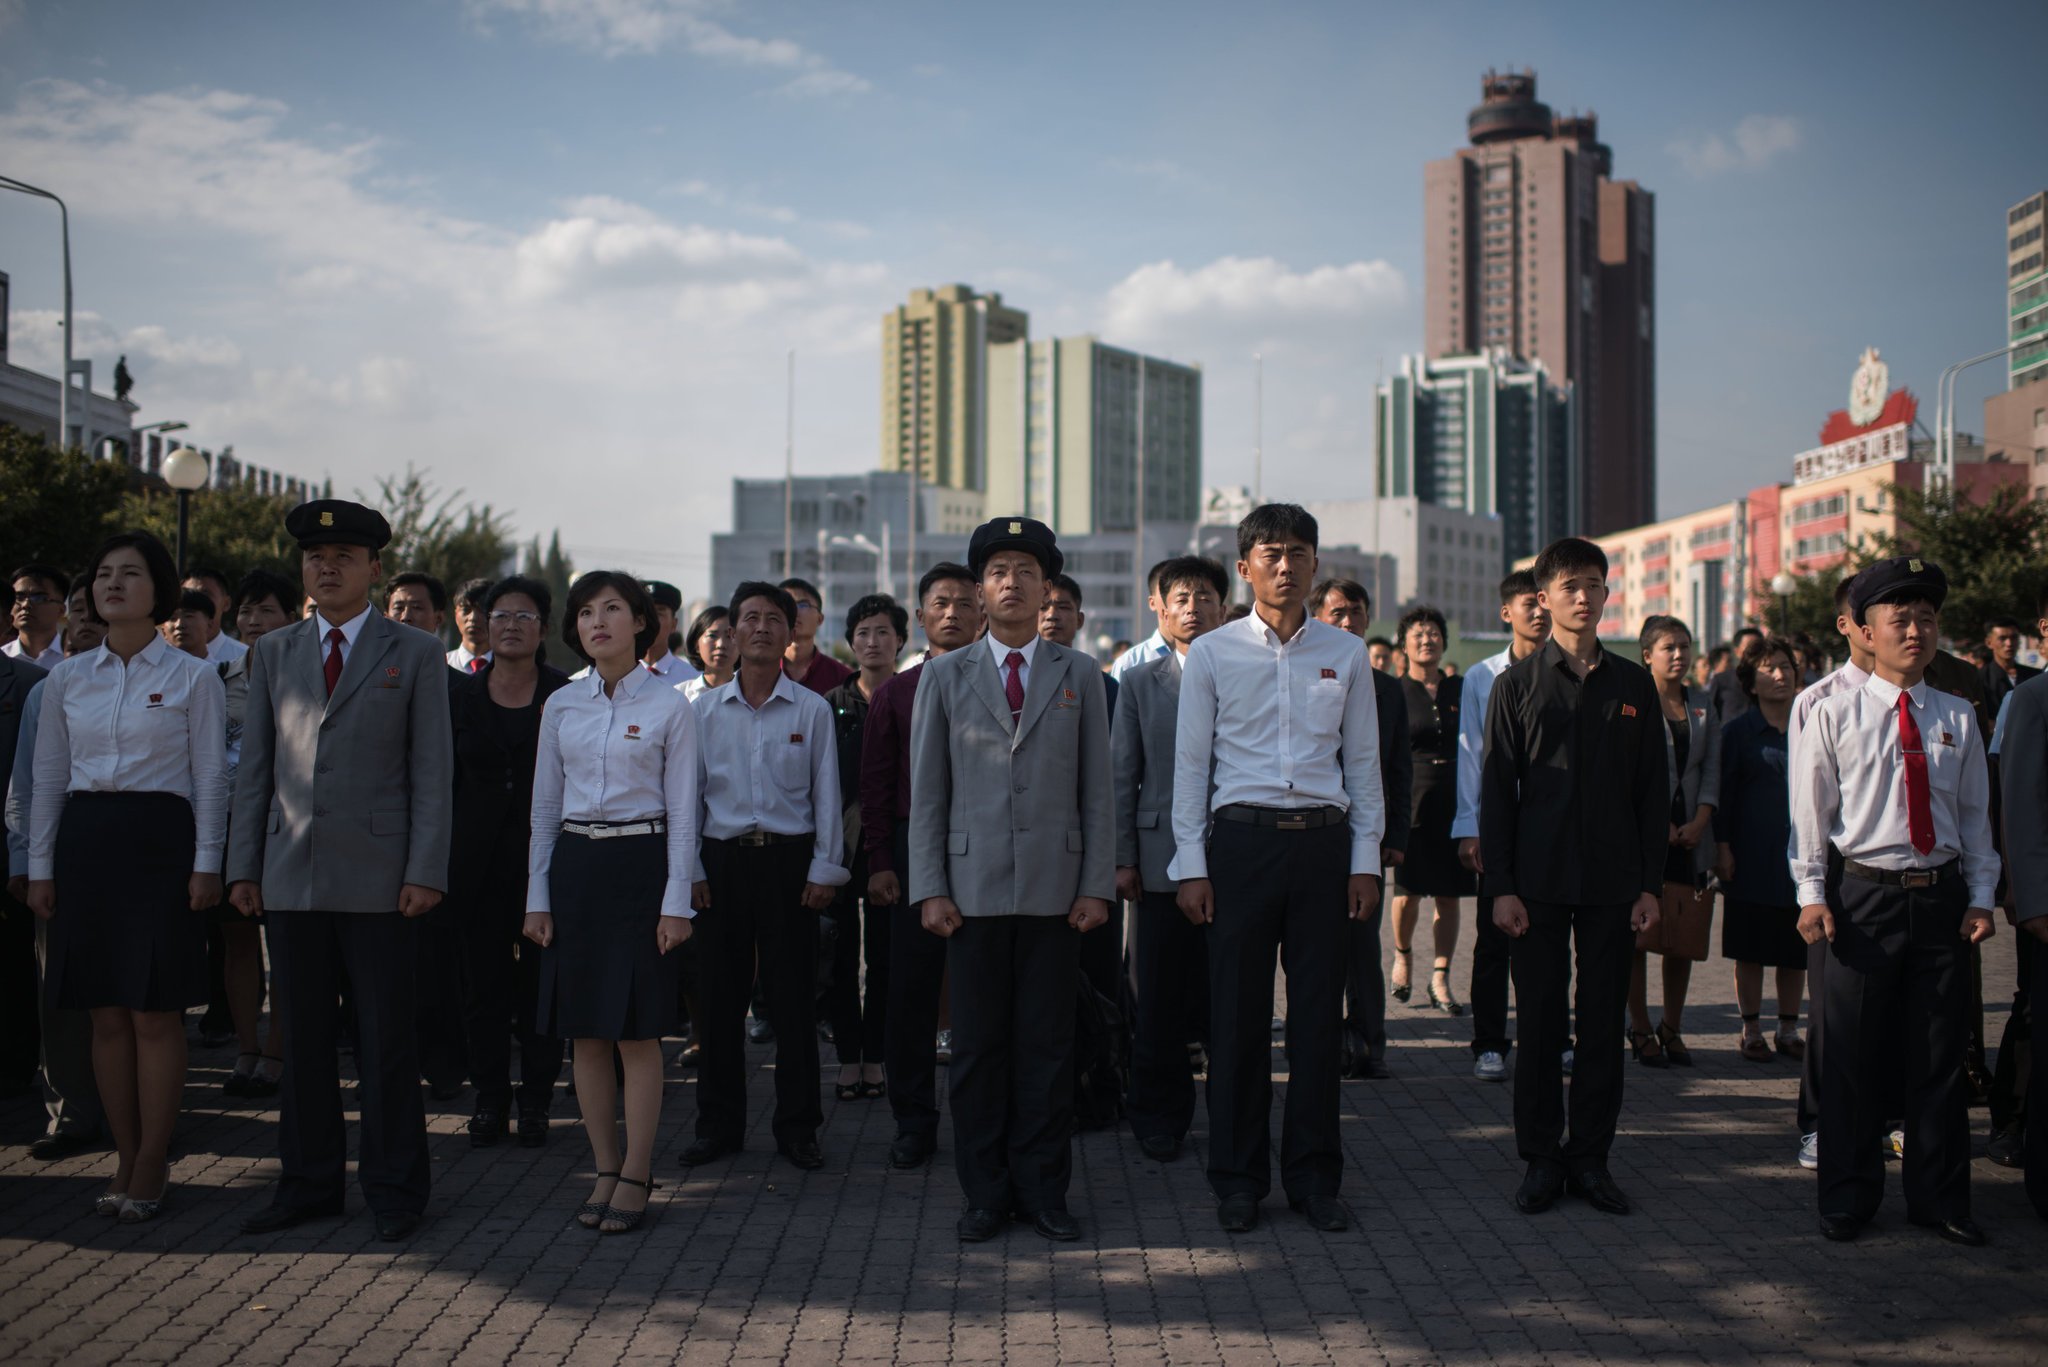 ألوان إلزامية للملابس.. صحيفة أميركية تكشف أغرب القواعد الحكومية في كوريا الشمالية